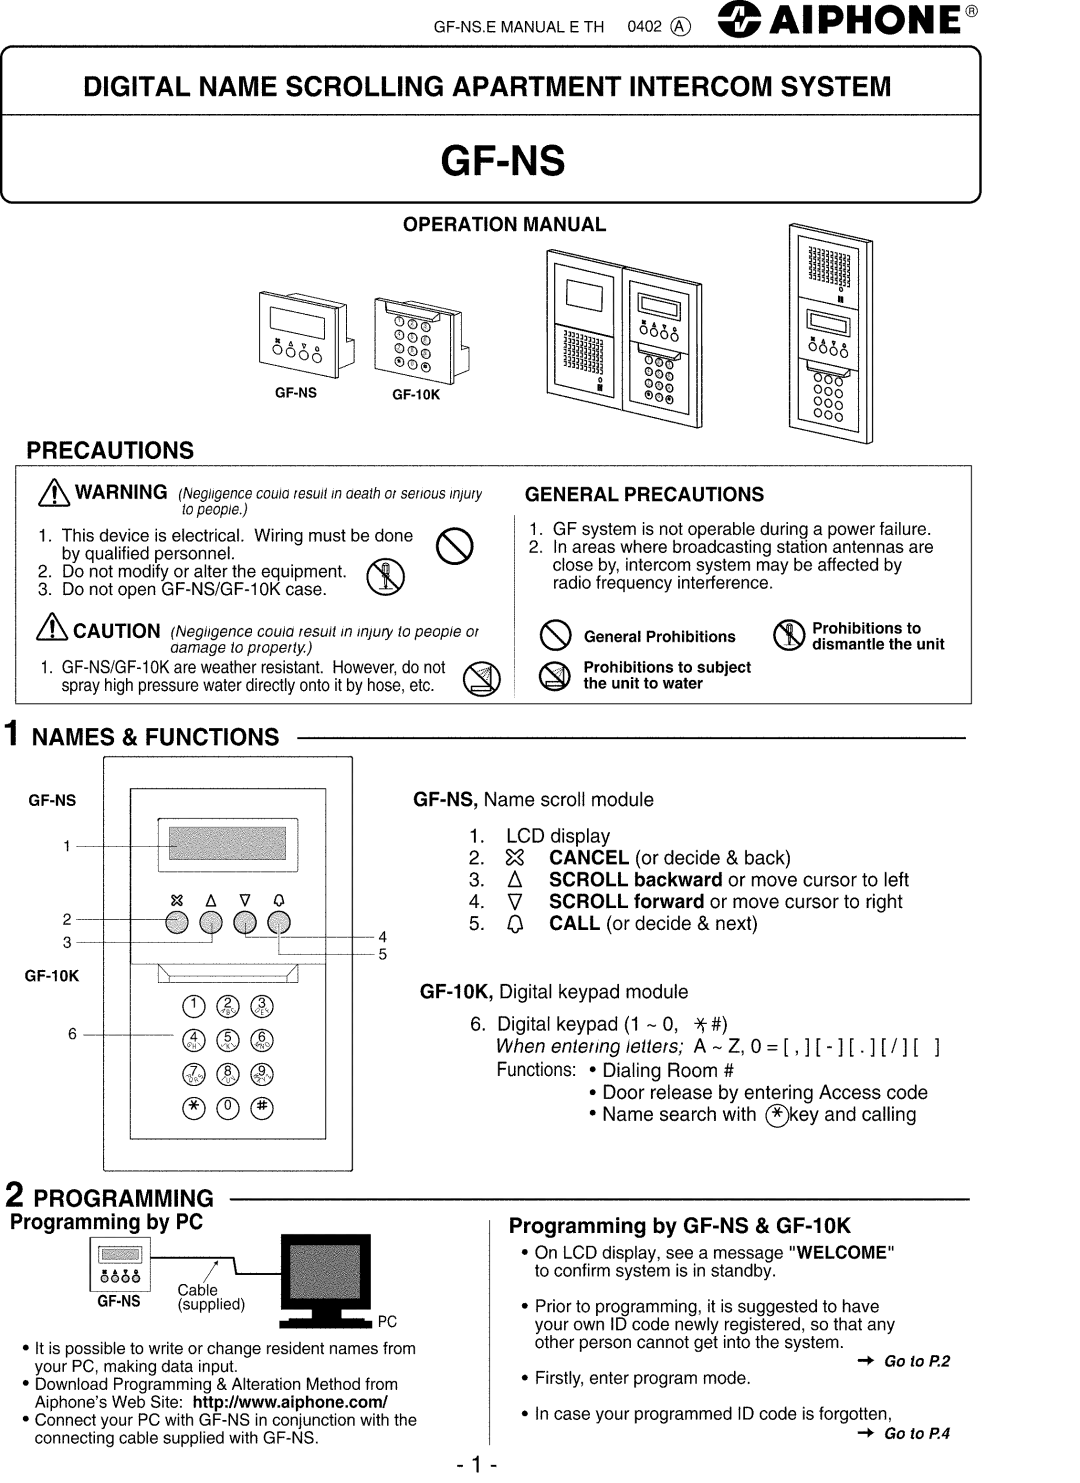 Aiphone GF-10K, GF-NS manual 